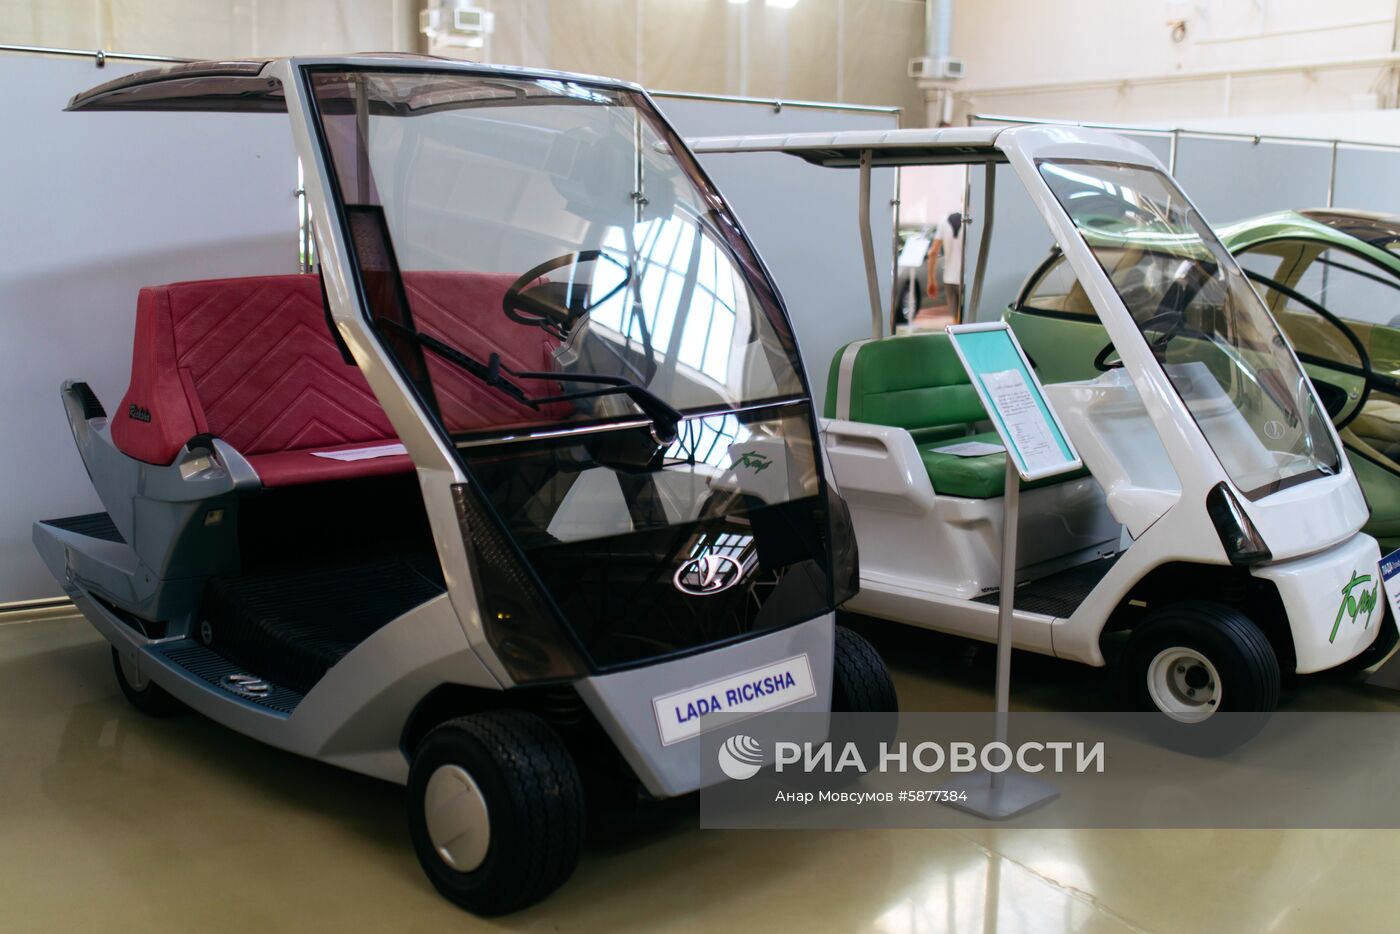 Музей прототипов "АвтоВАЗ" в Тольятти